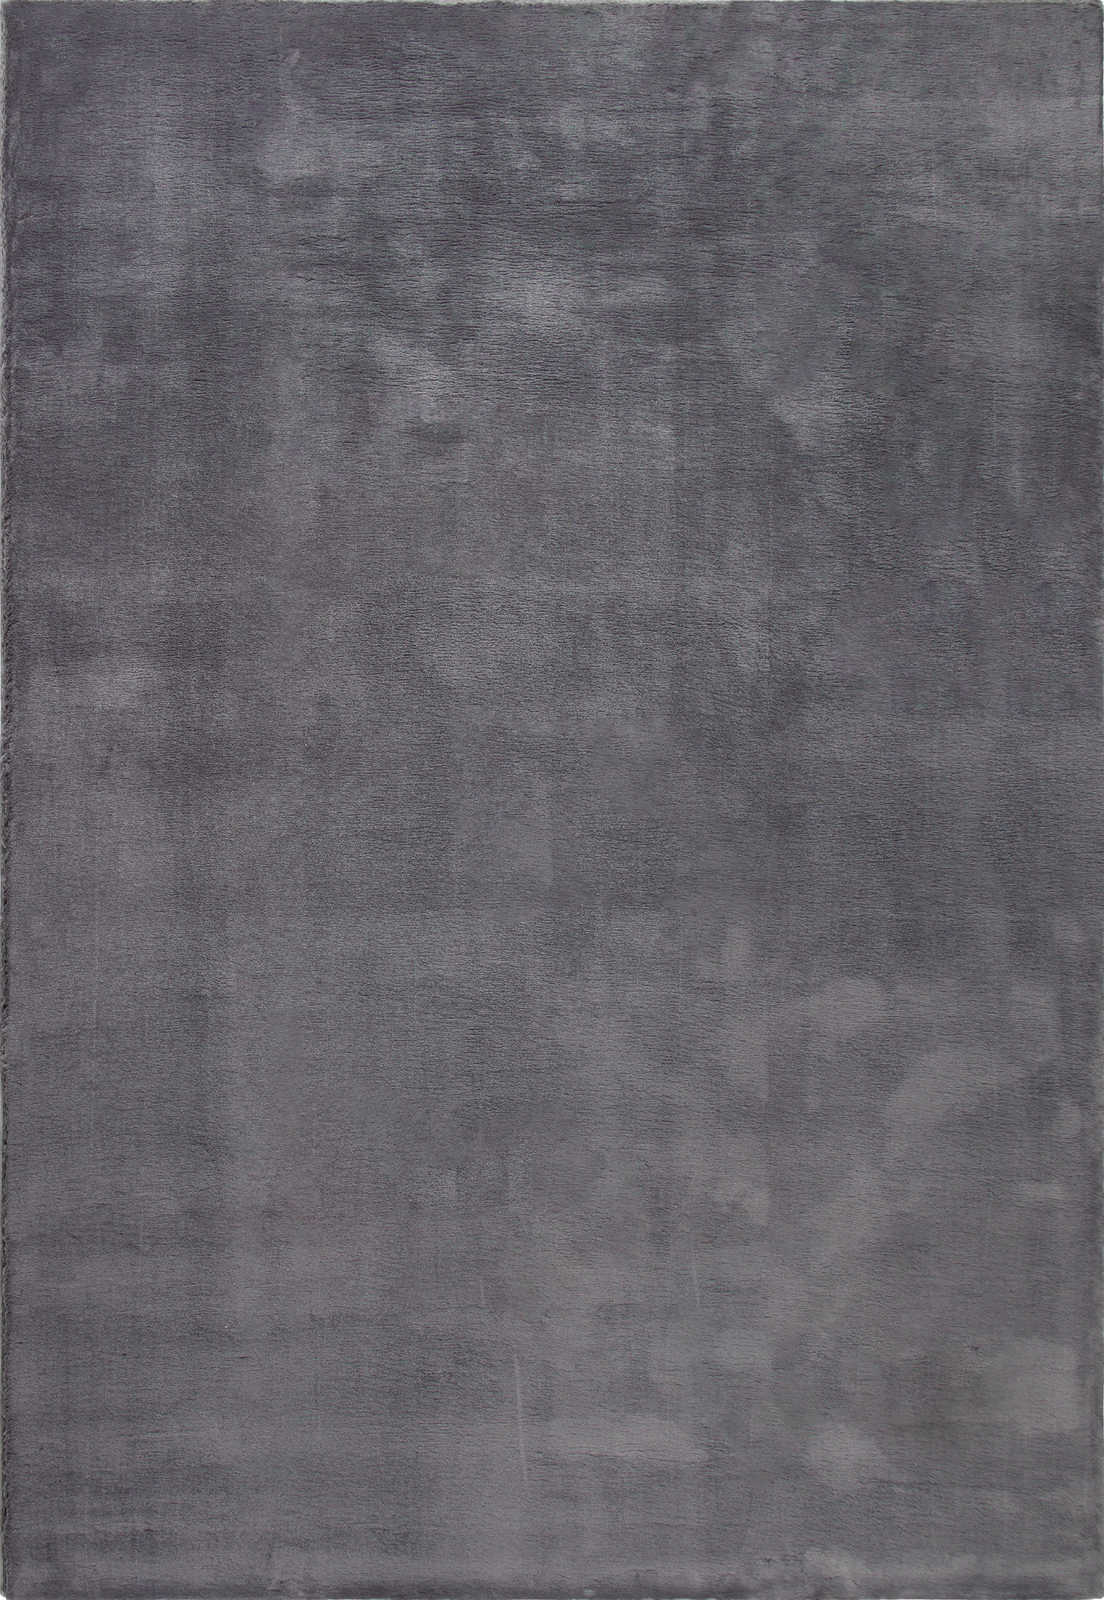             Modern hoogpolig tapijt in antraciet - 230 x 160 cm
        